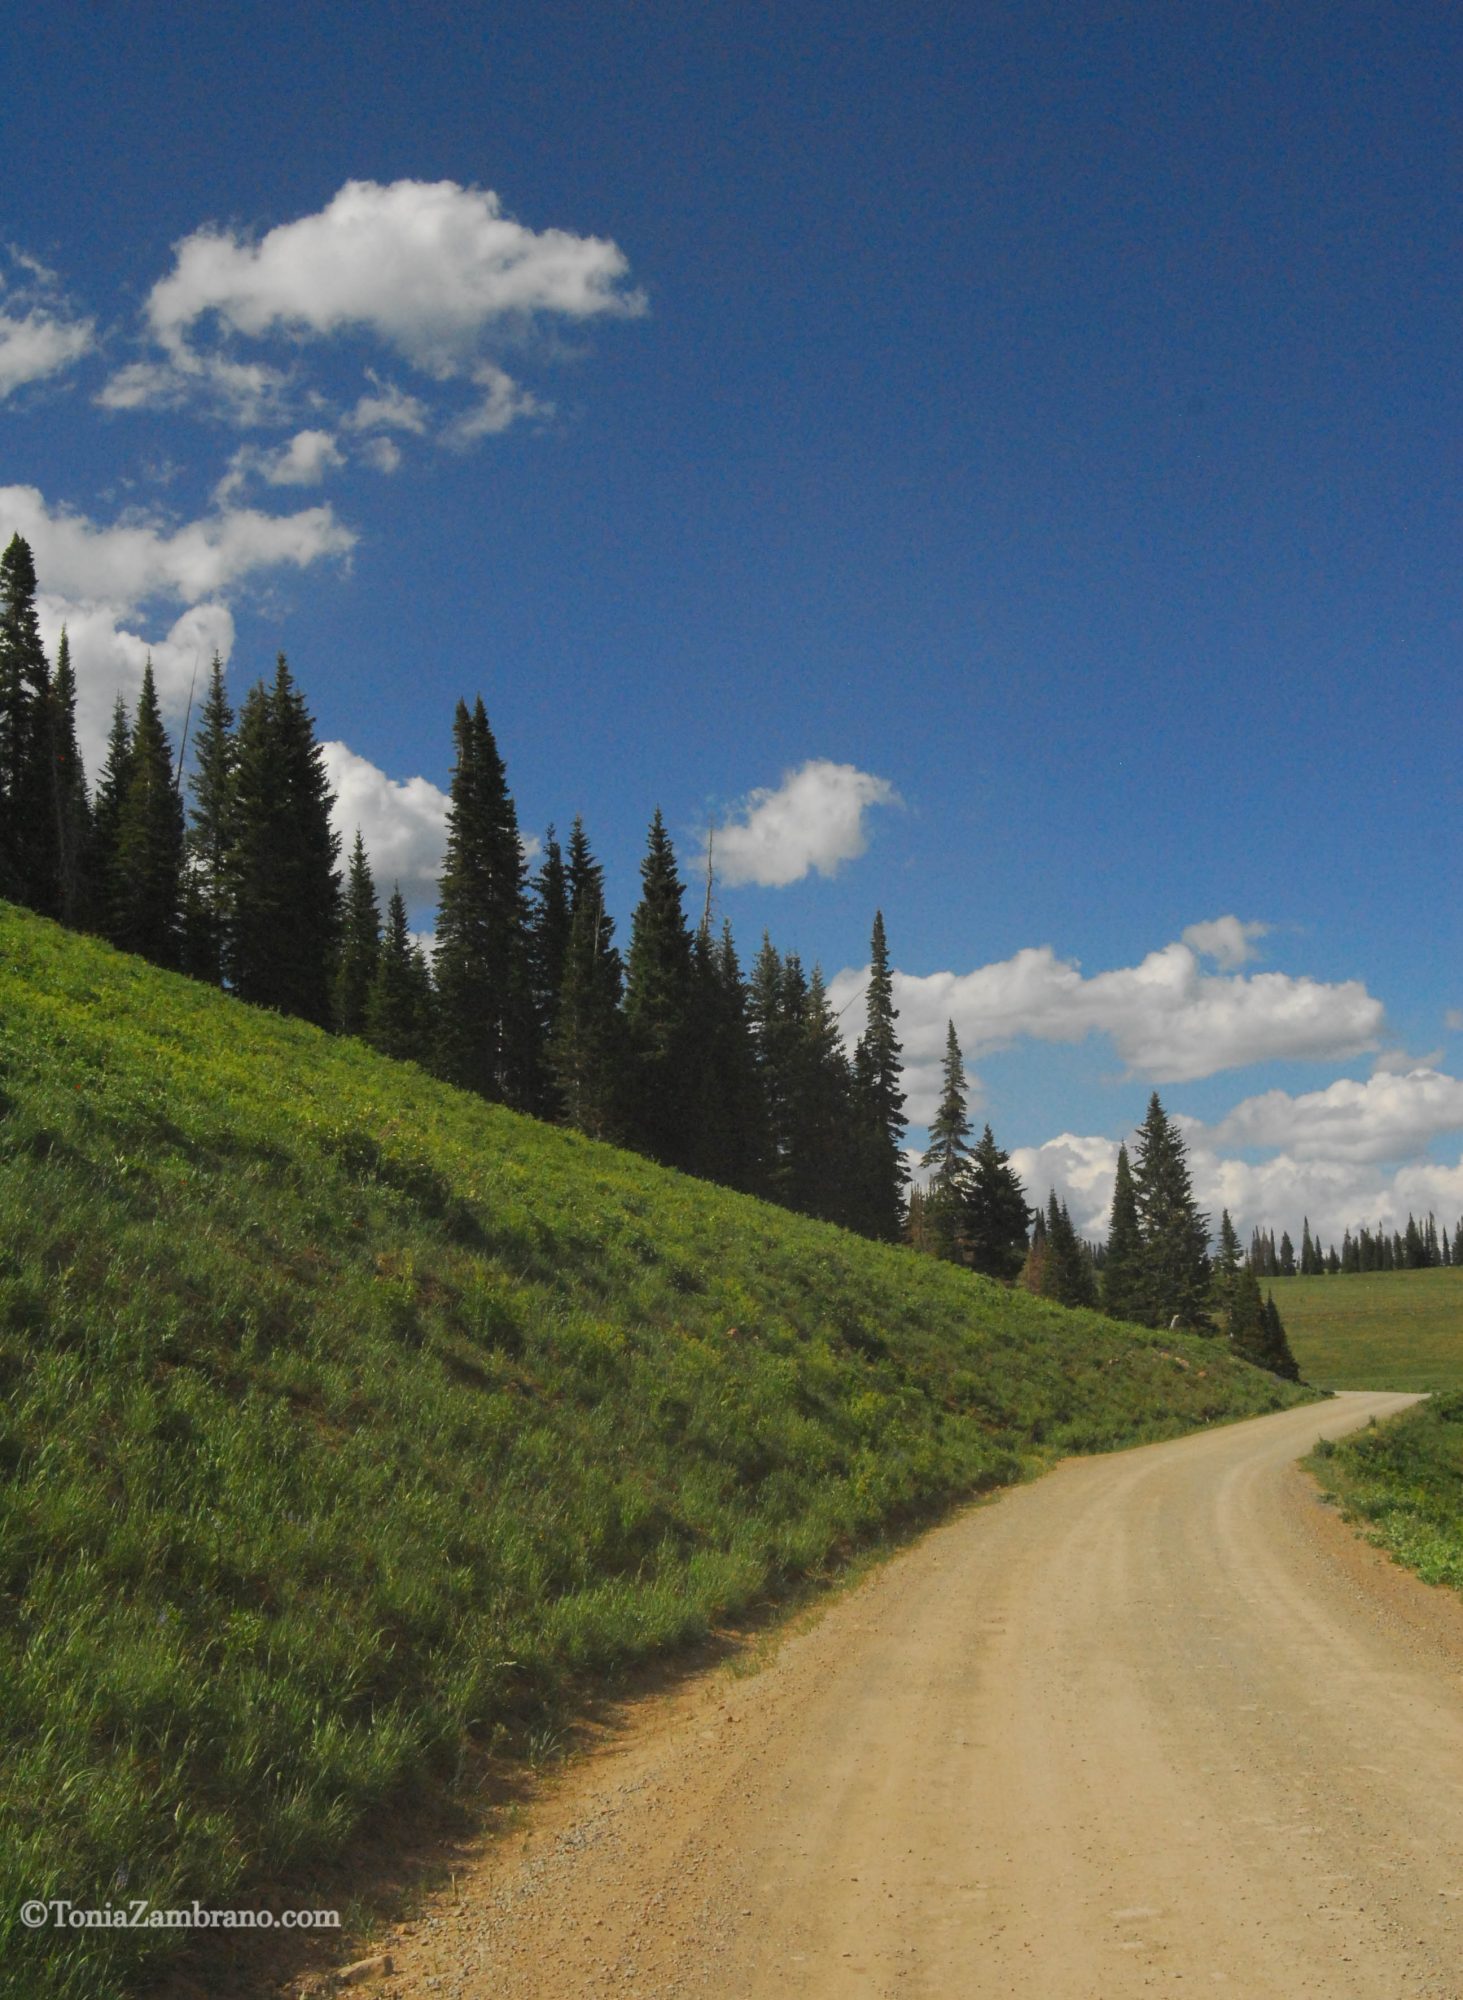 Road to Aspen, Colorado, 2010